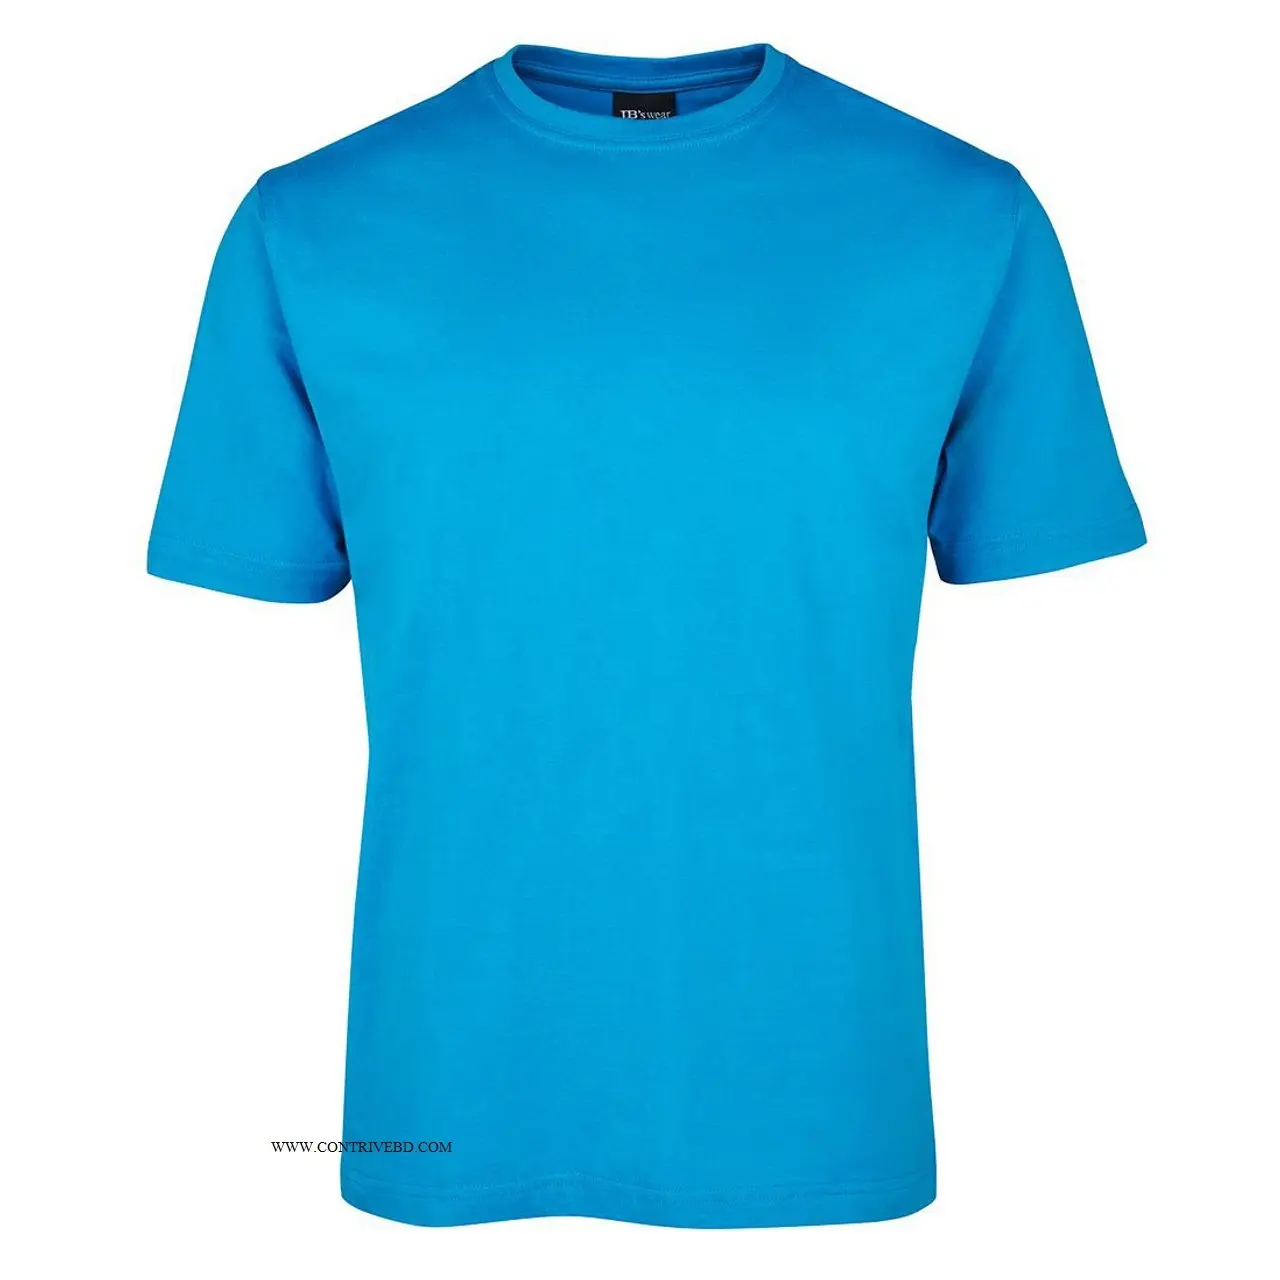 Bán buôn Mens camiseta Chất lượng cao T-Shirt in ấn theo yêu cầu tùy chỉnh in logo nhãn 100% cotton ngắn tay áo BL